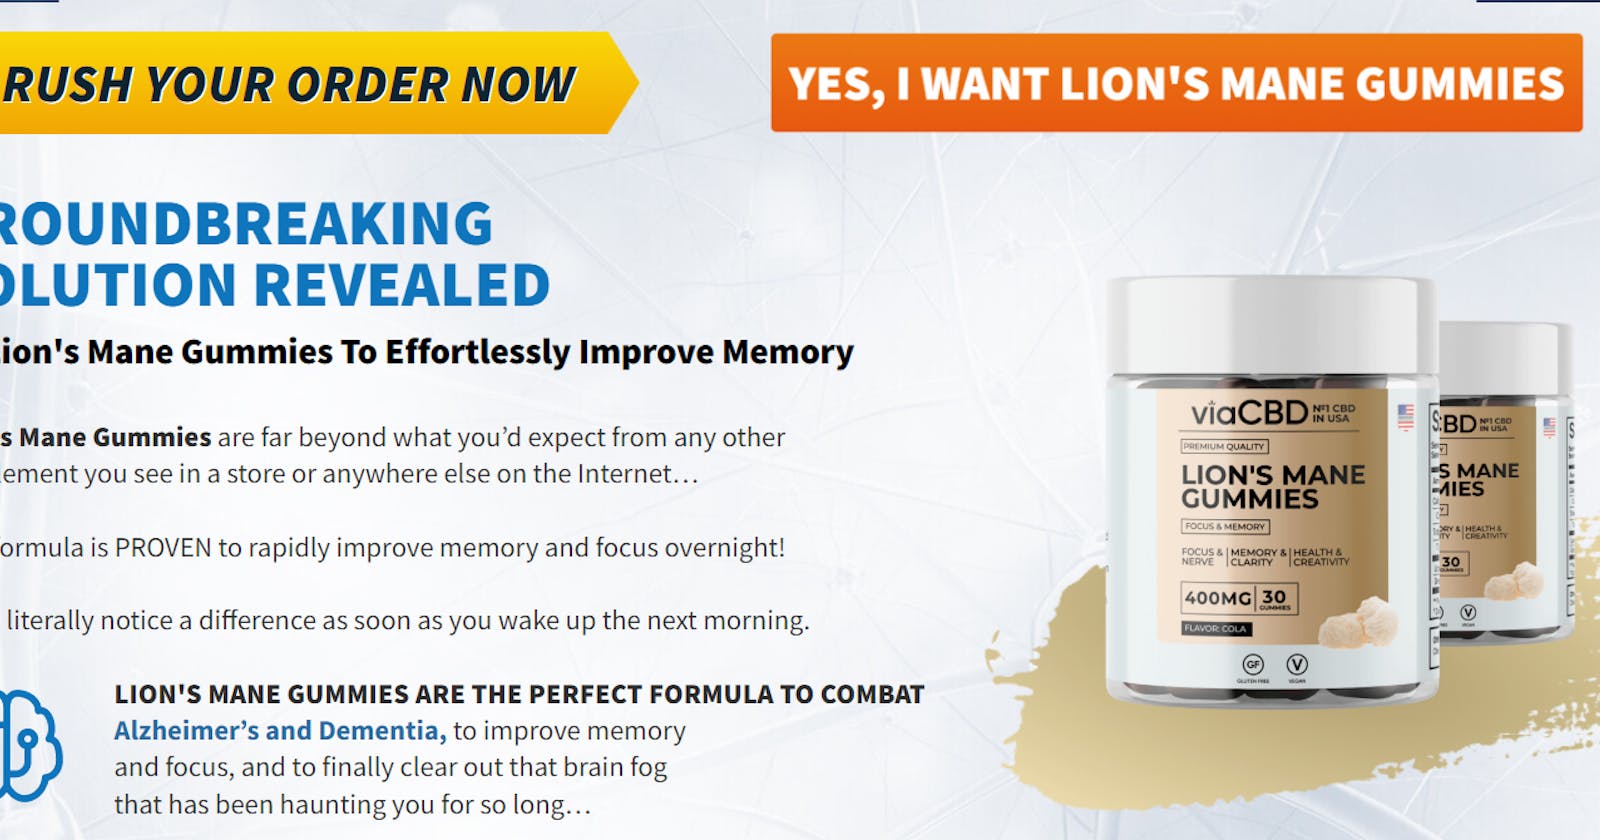 ViaCBD Lion's Mane Gummies - Supports Nerves Health or Formula?